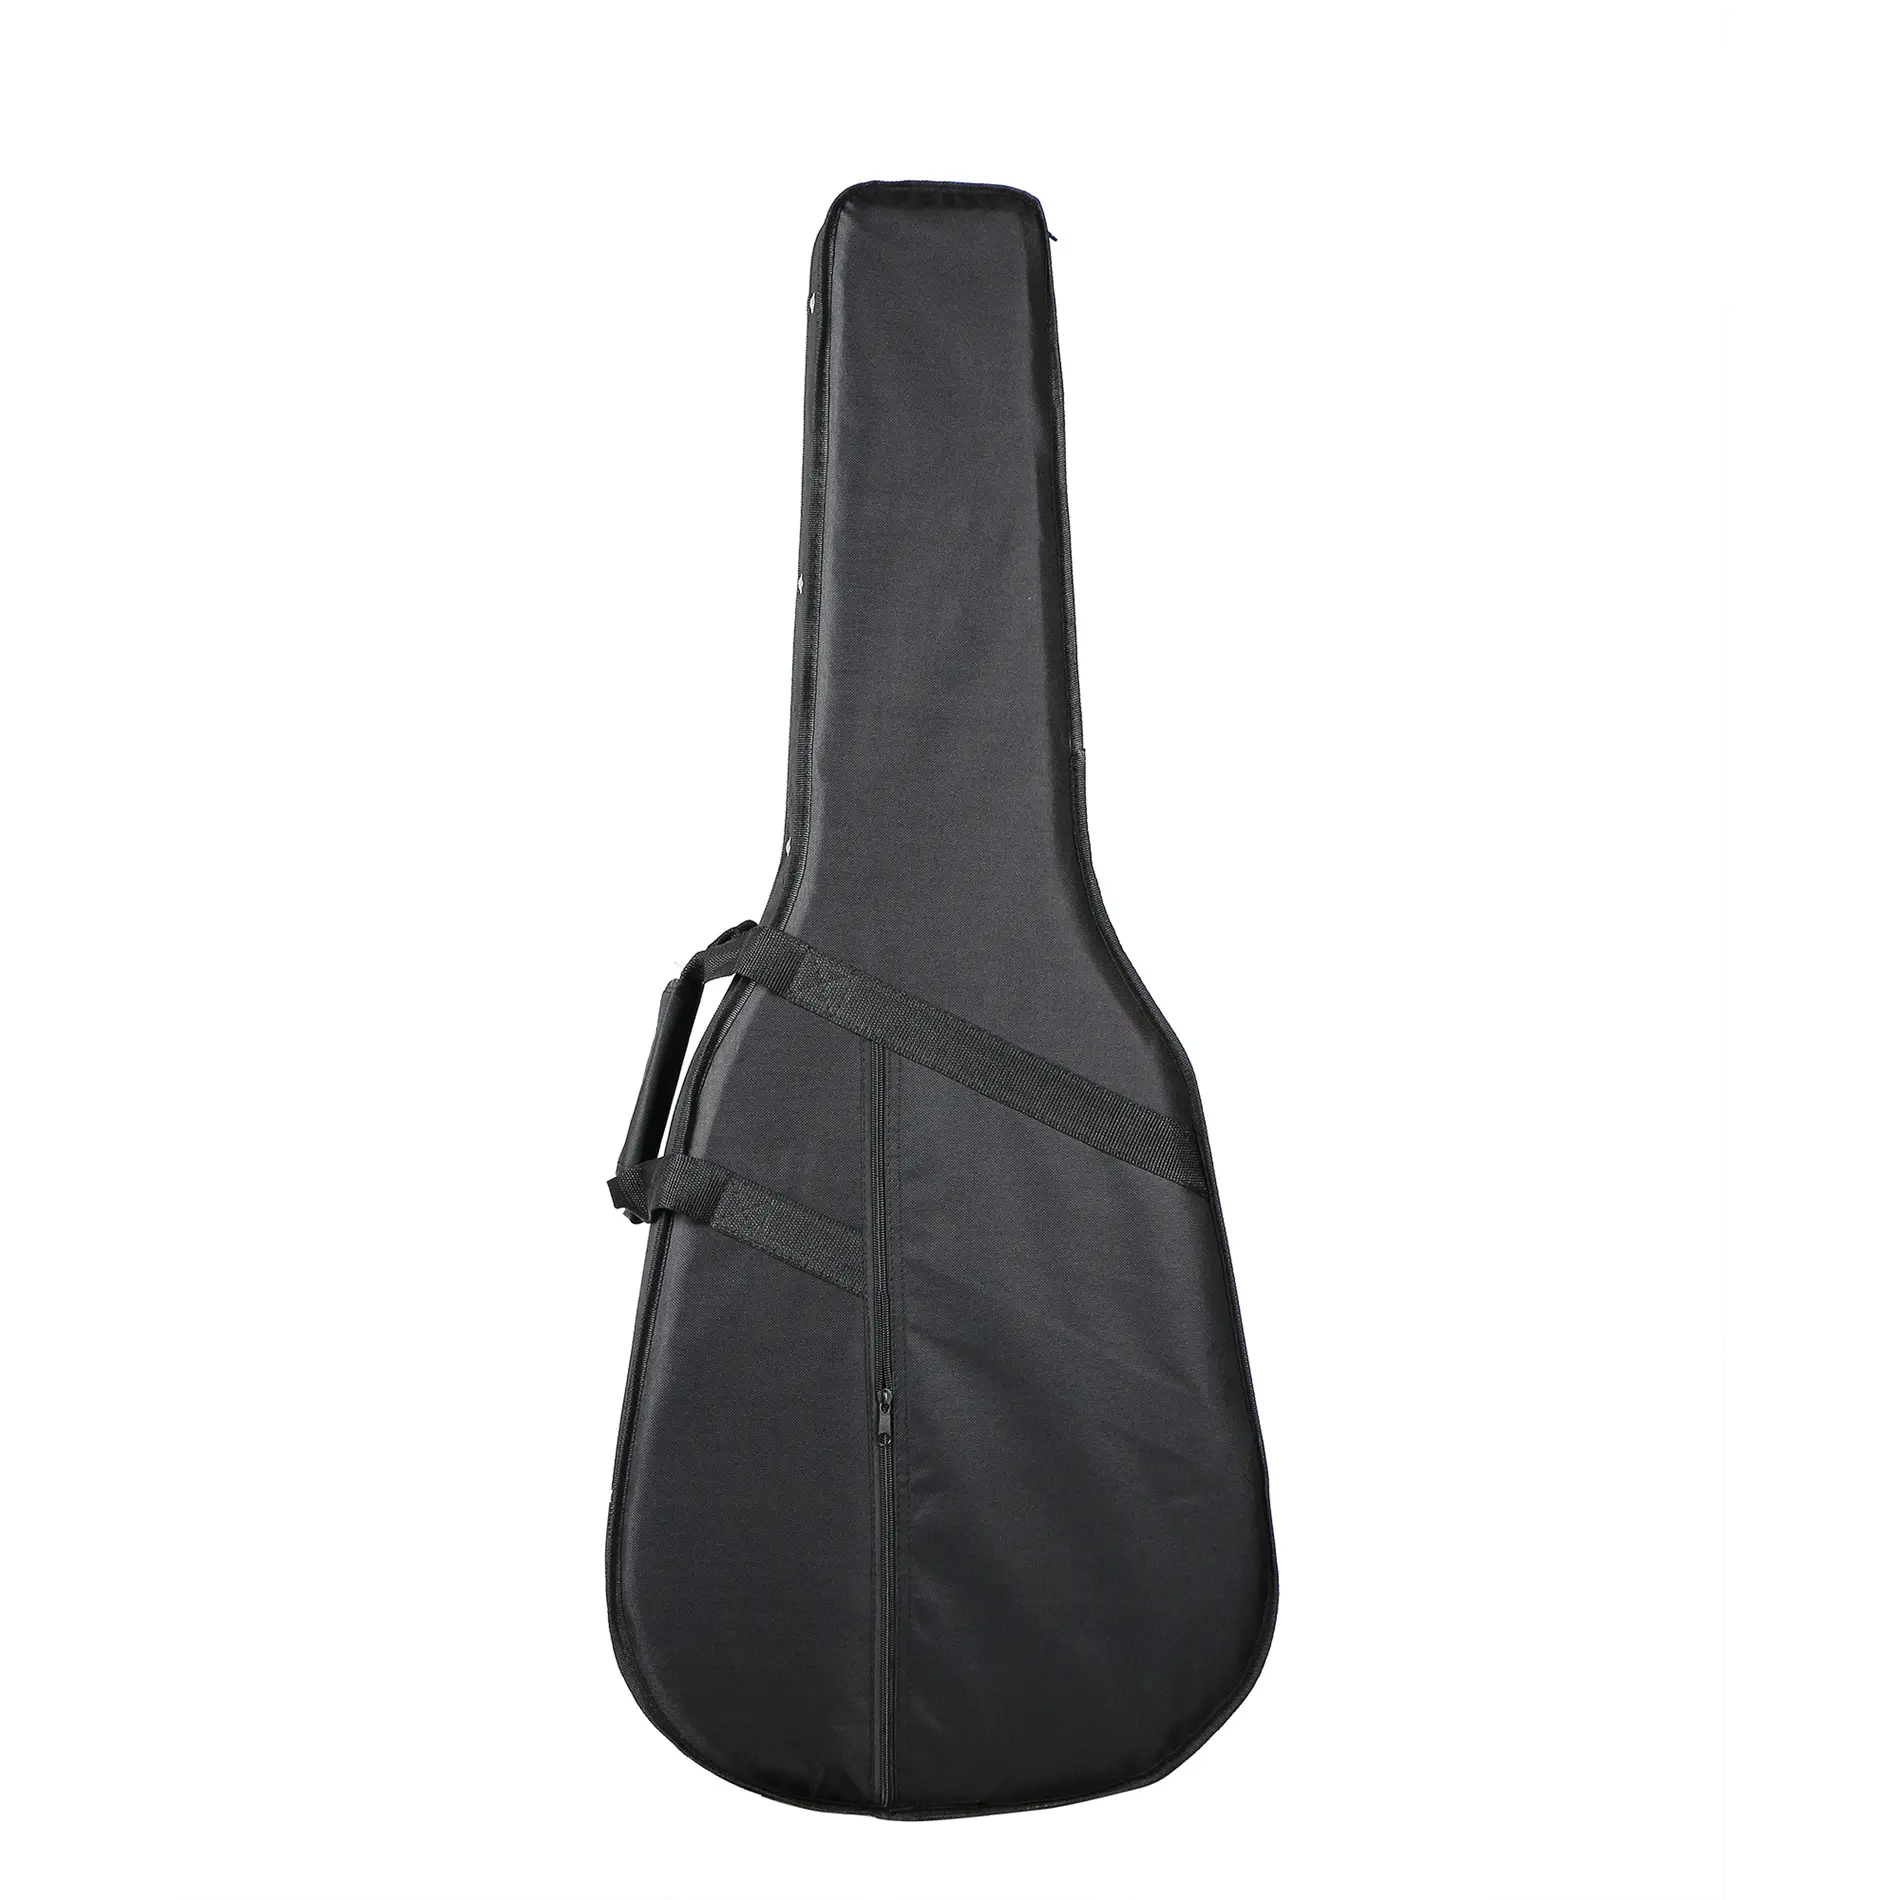 41 zoll Akustische Gitarre Tasche 20mm Dicke Polsterung Wasserdicht Dual Einstellbare Schulter Gurt Gitarre Fall